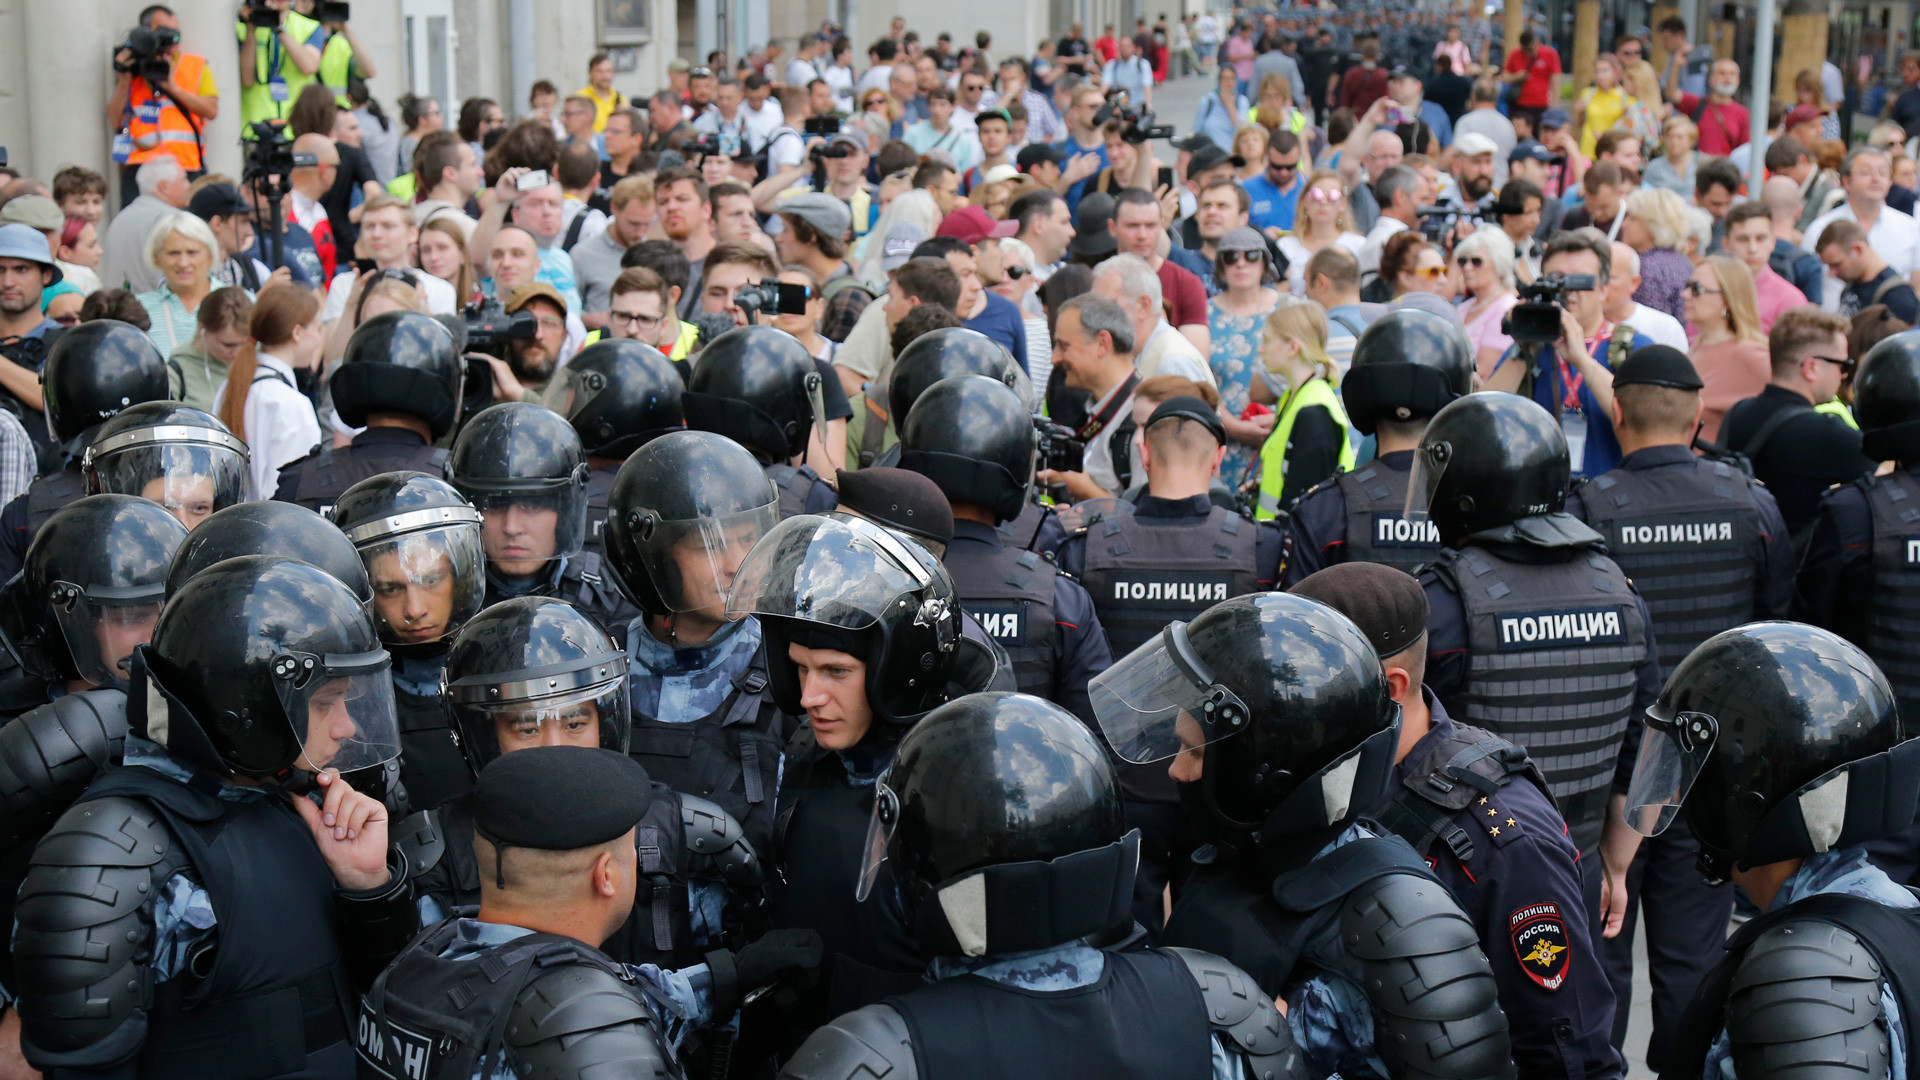 Предупреждение массовых беспорядков. Митинг 27 июля 2019 в Москве. Массовые протесты в России. Массовые беспорядки полиция.